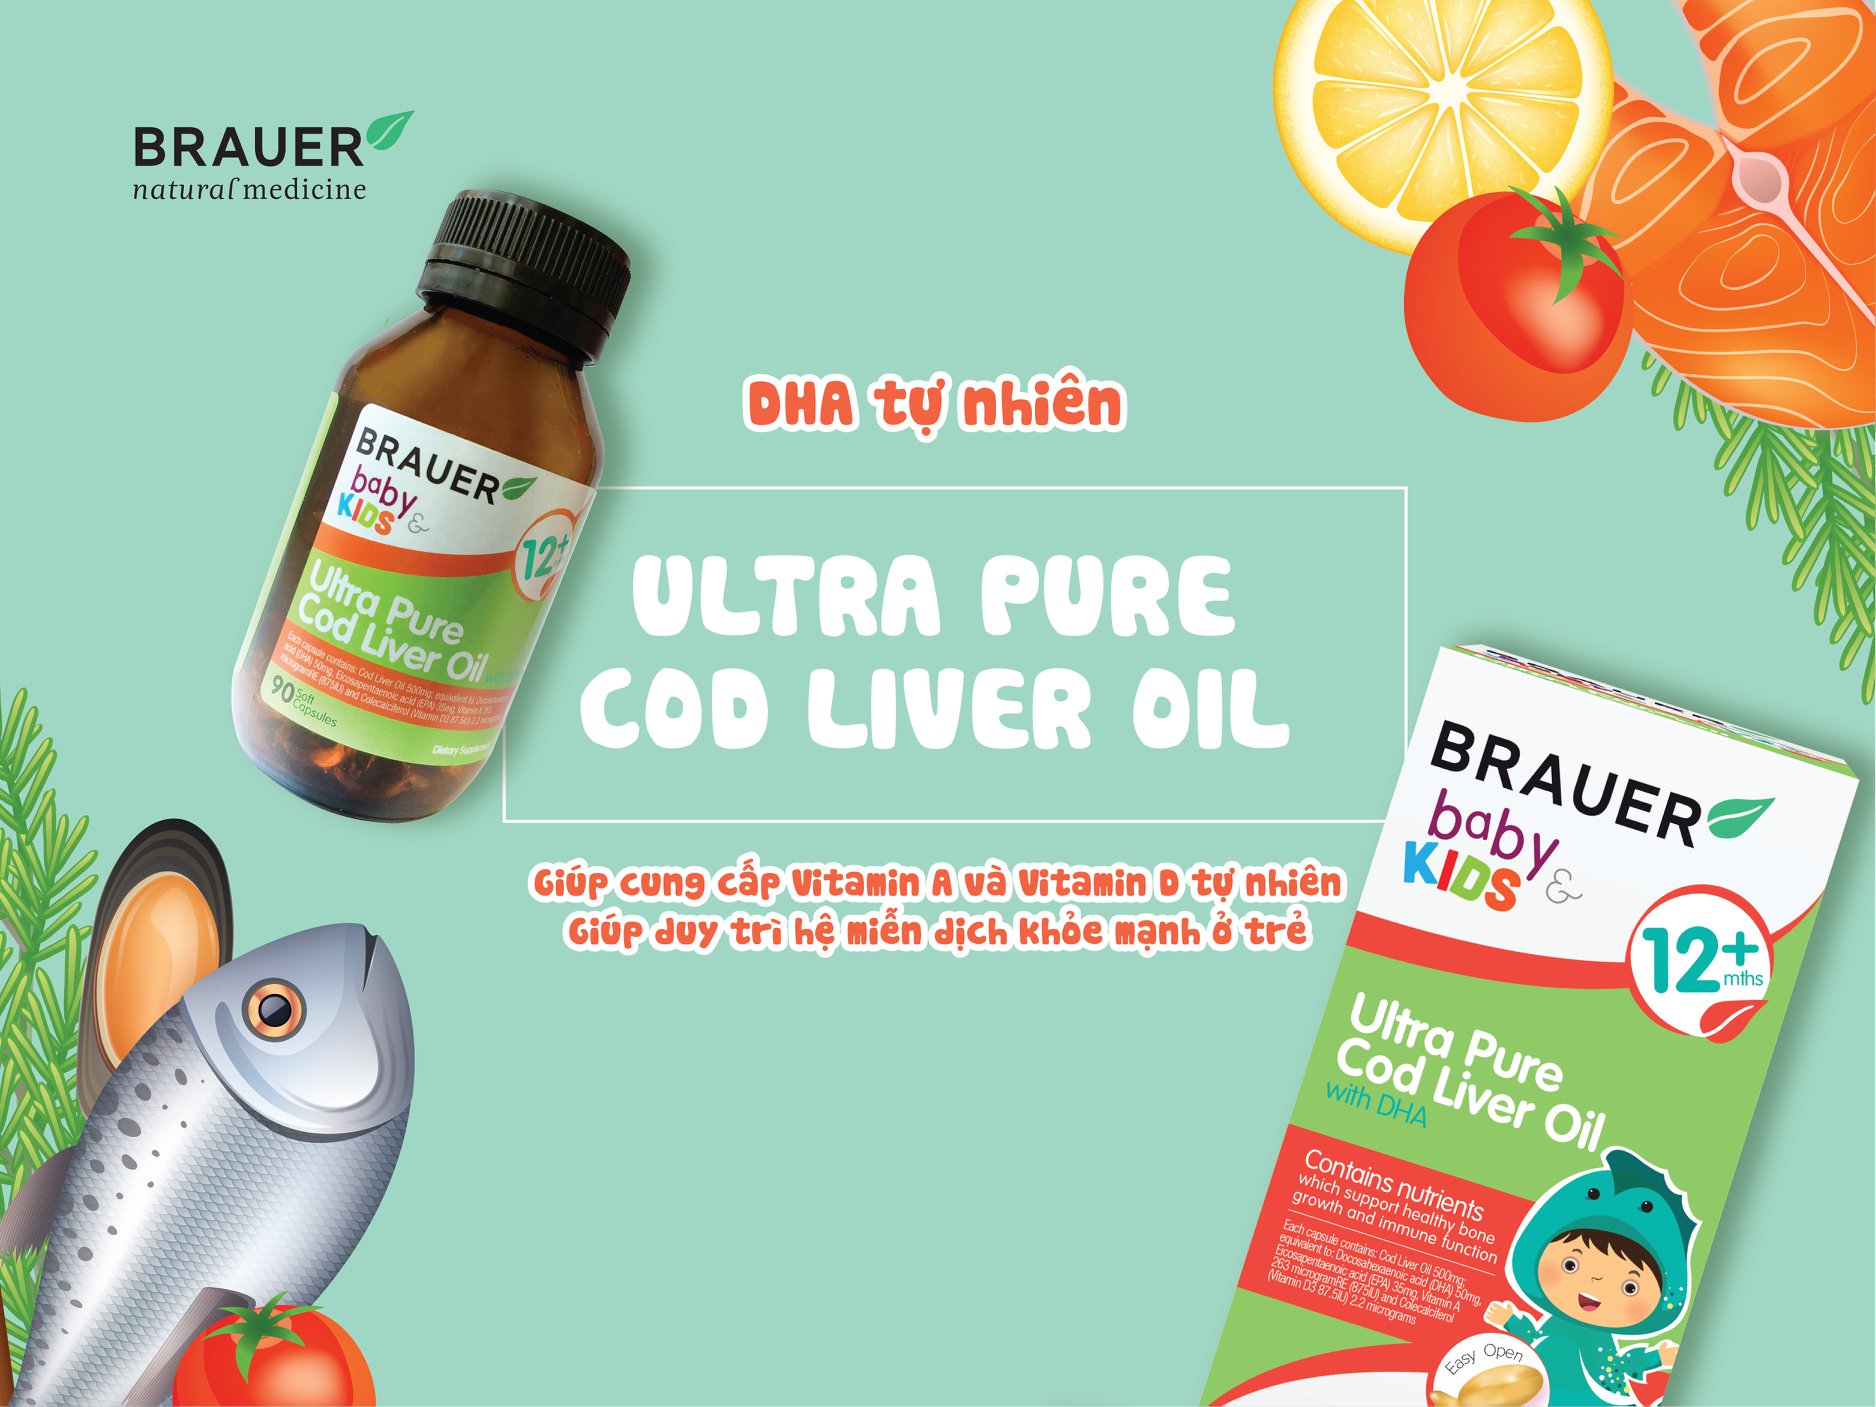 DHA Cho Bé Brauer Ultra Pure Cod Liver Oil NK Úc Giúp Phát Triển Não Bộ, Hỗ Trợ Khả Năng Tập Trung, Nhận Thức Và Ghi Nhớ, Cải Thiện Thị Lực, Chống Mỏi Mắt, Khô Mắt, Tăng Hệ Miễn Dịch Chai 90 viên nang 4